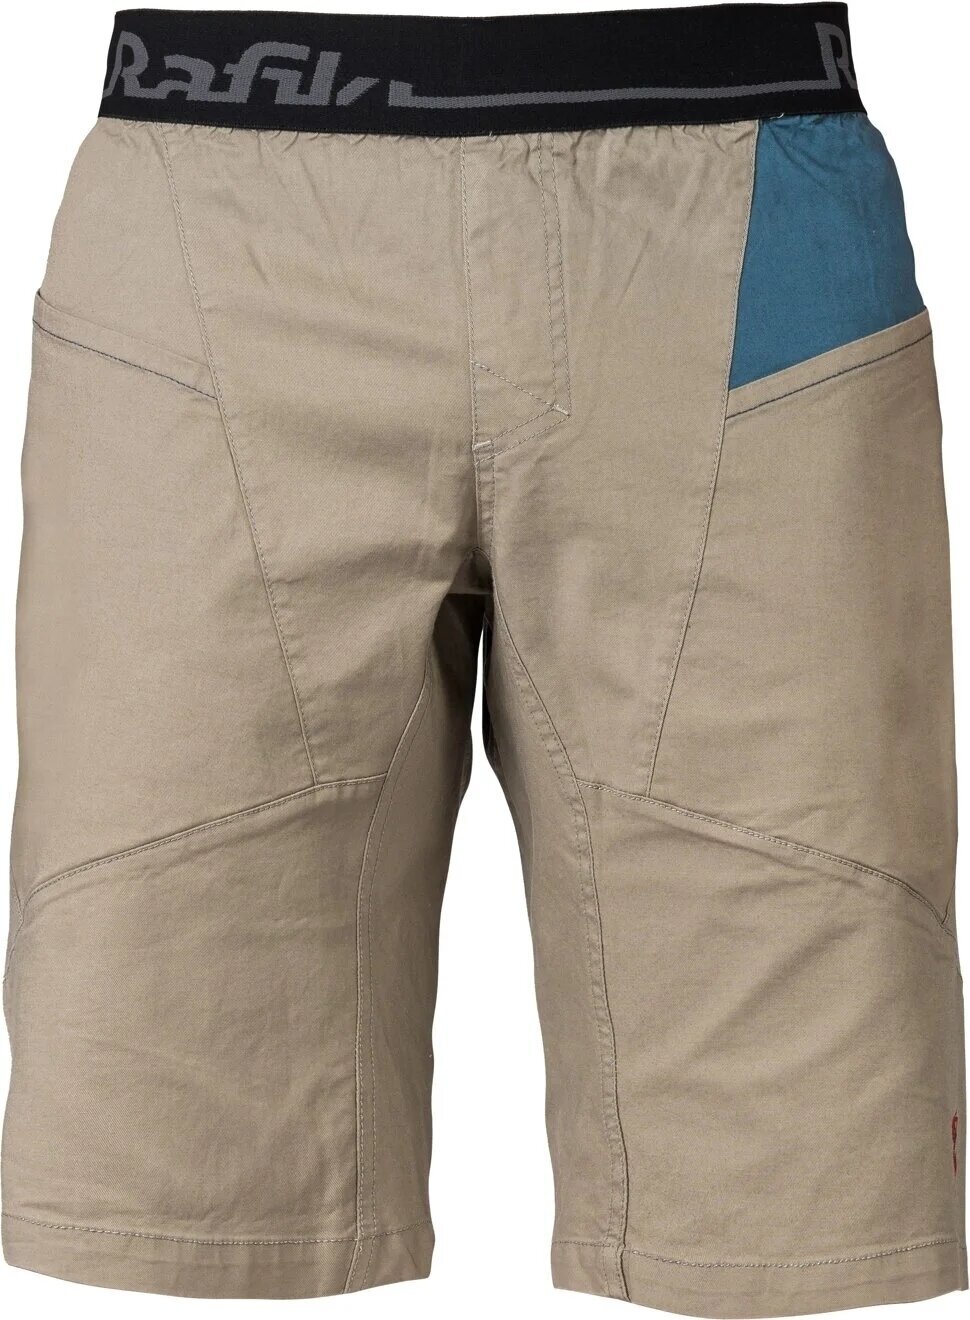 Kratke hlače na otvorenom Rafiki Megos Man Shorts Brindle/Stargazer L Kratke hlače na otvorenom